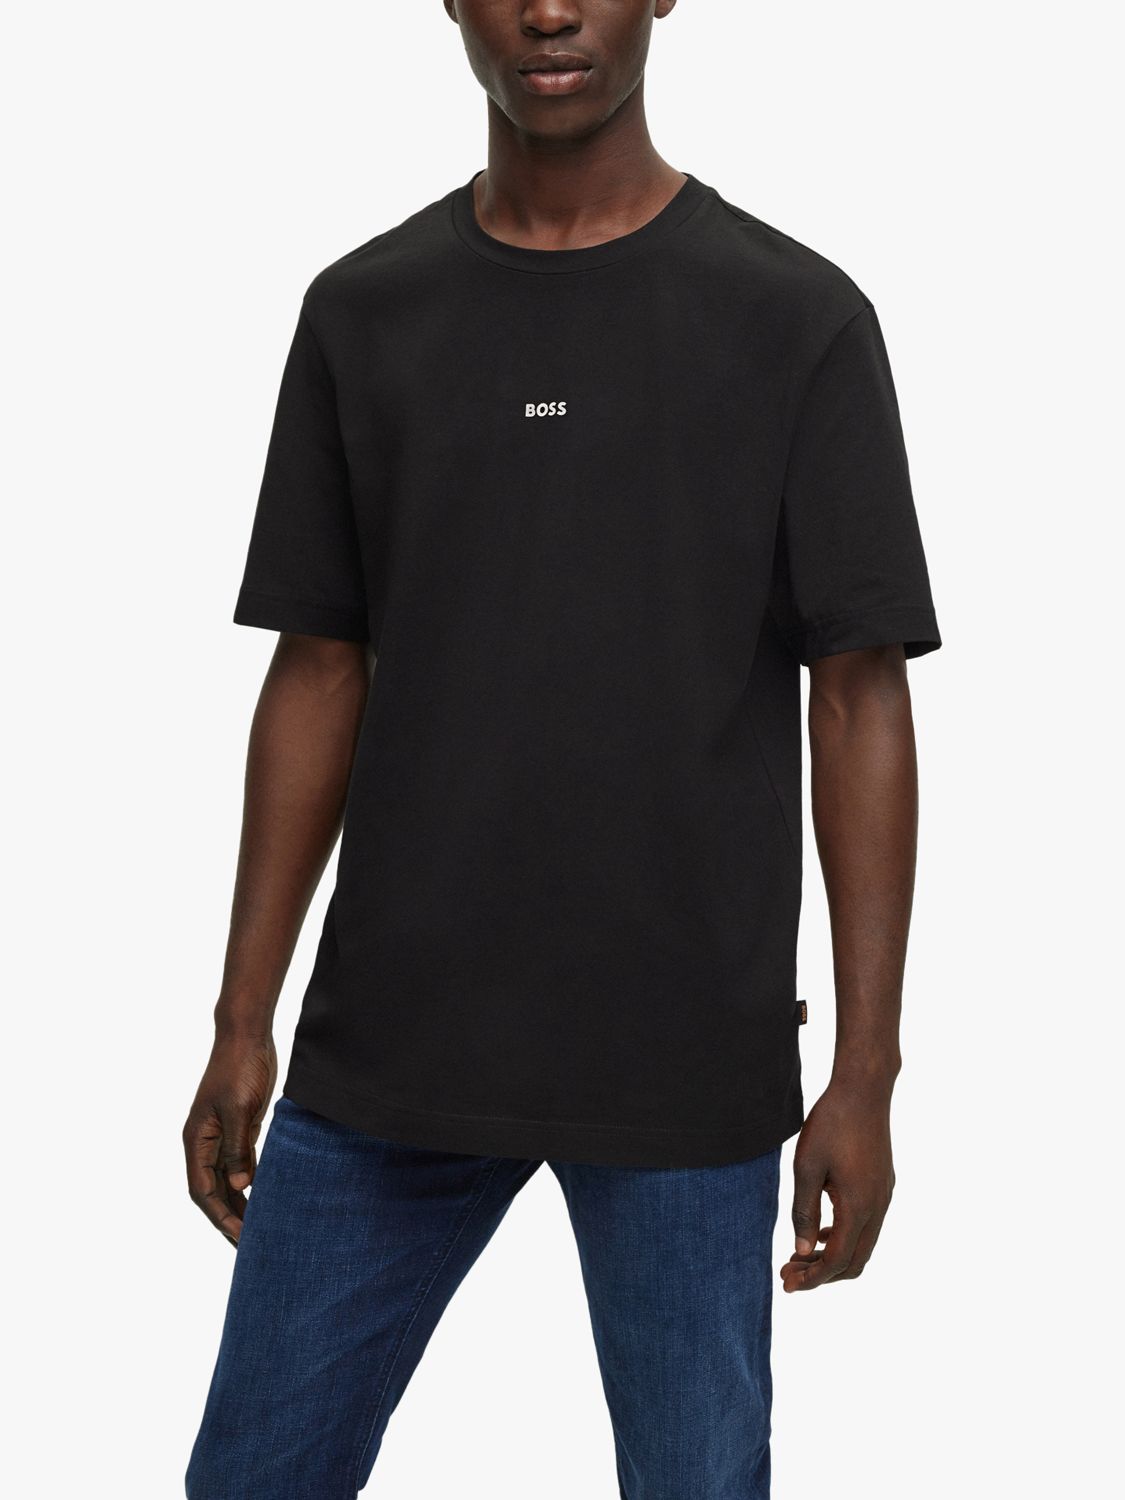 BOSS TChup Logo T-Shirt, Black, S